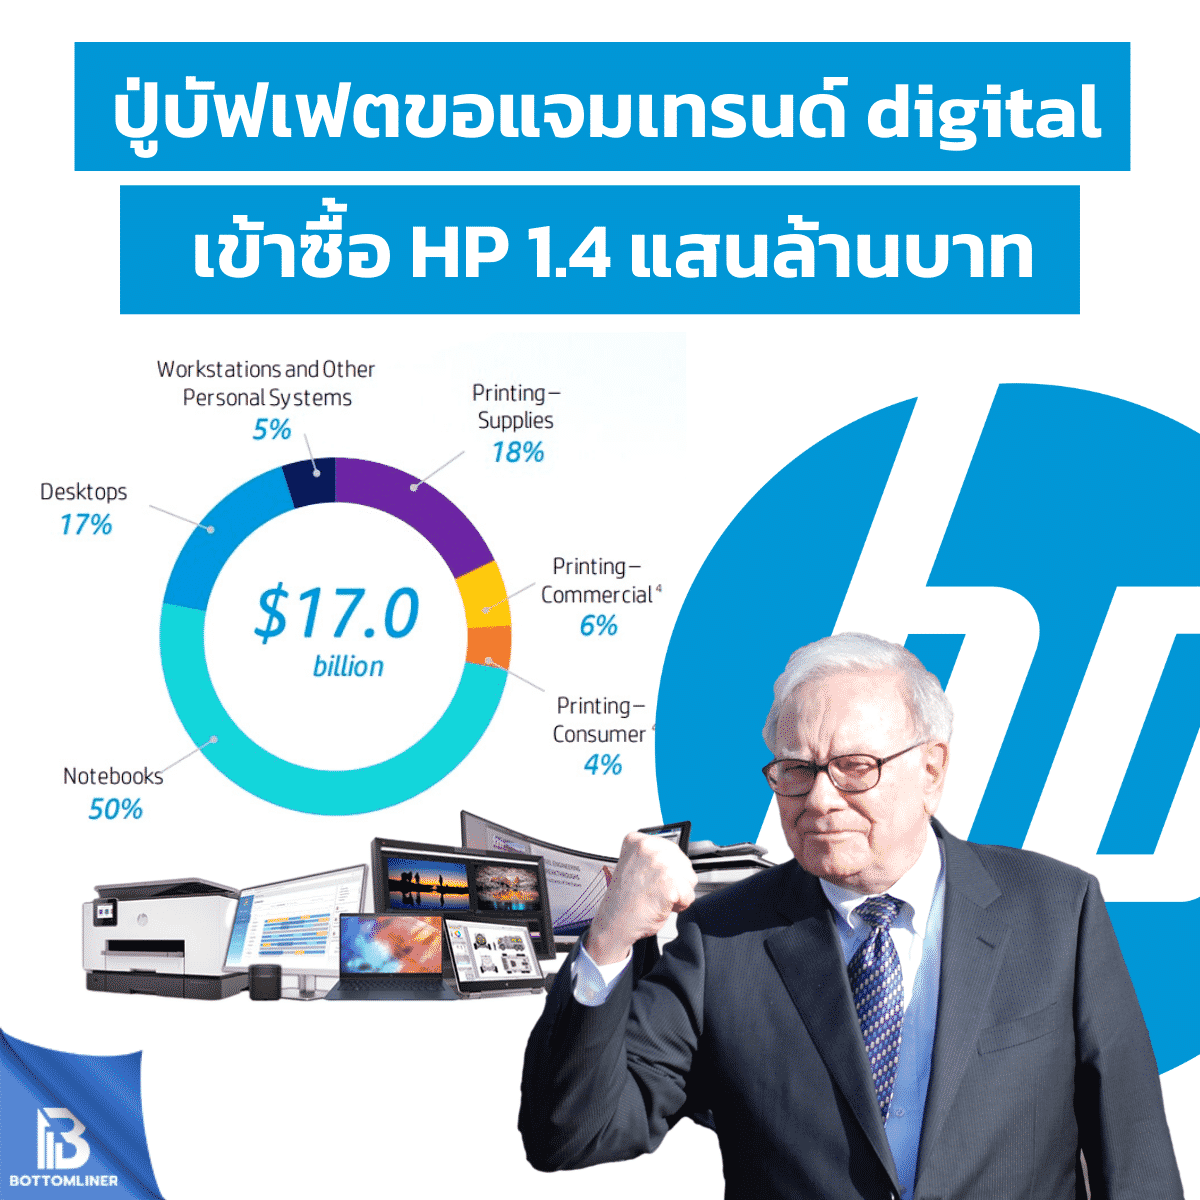 ปู่บัฟเฟตขอแจมเทรนด์digital เข้าซื้อ HP 1.4 แสนล้านบาท